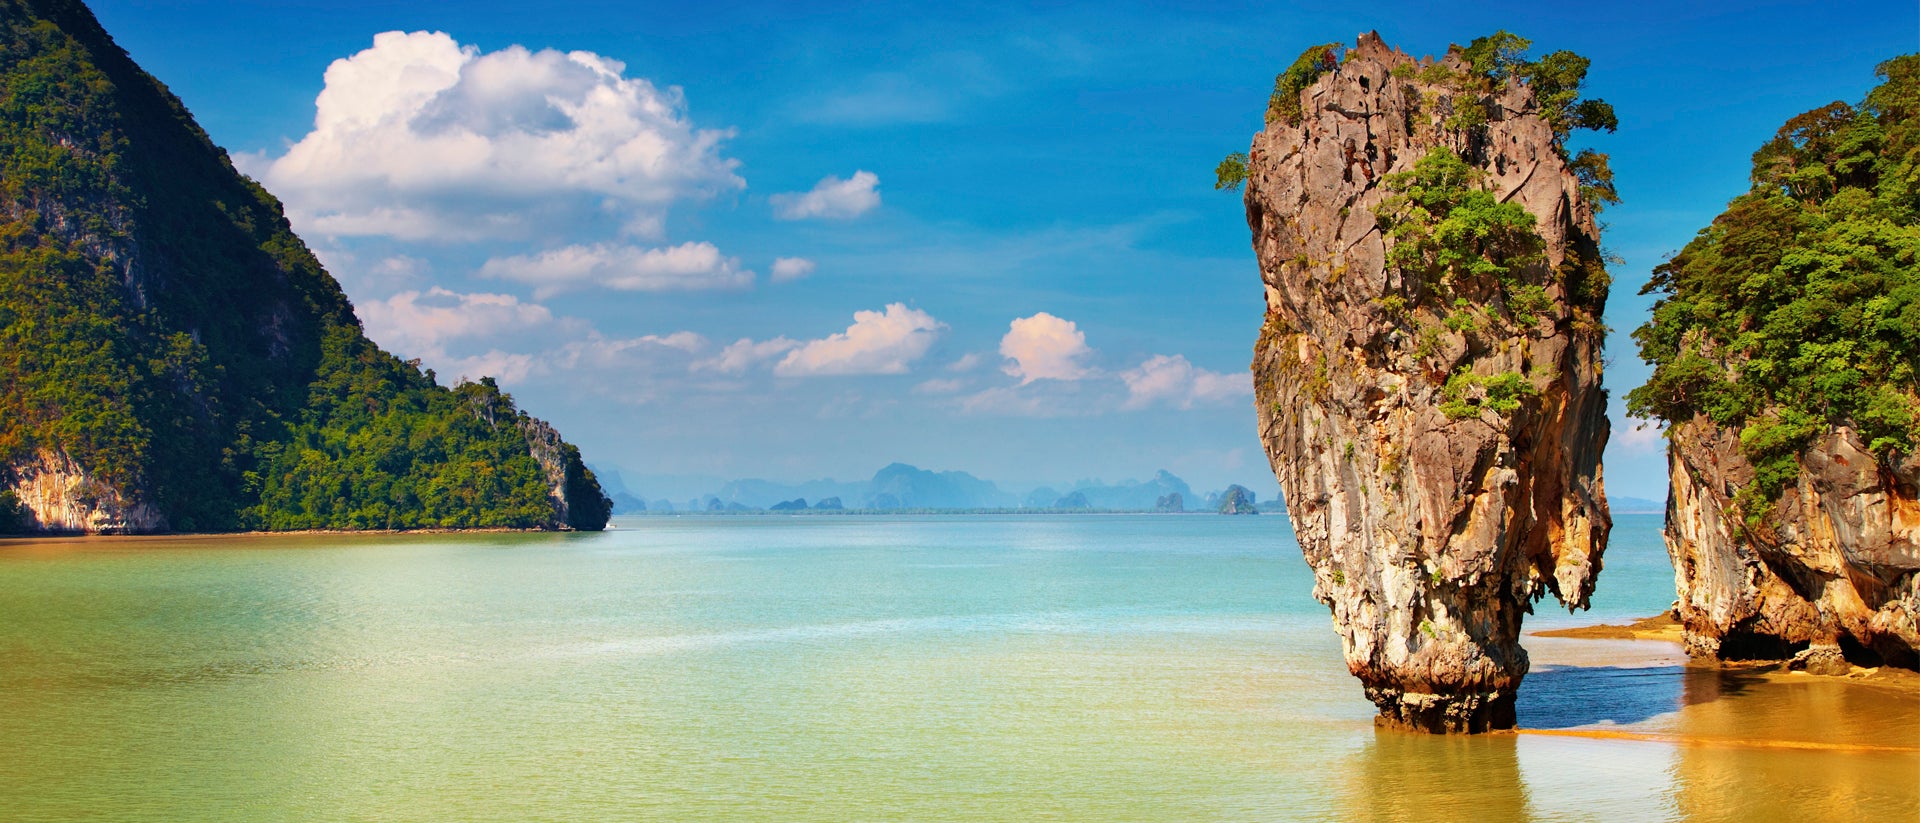 Paysage d'îles rocheuses dans des eaux cristallines en Asie du Sud-Est